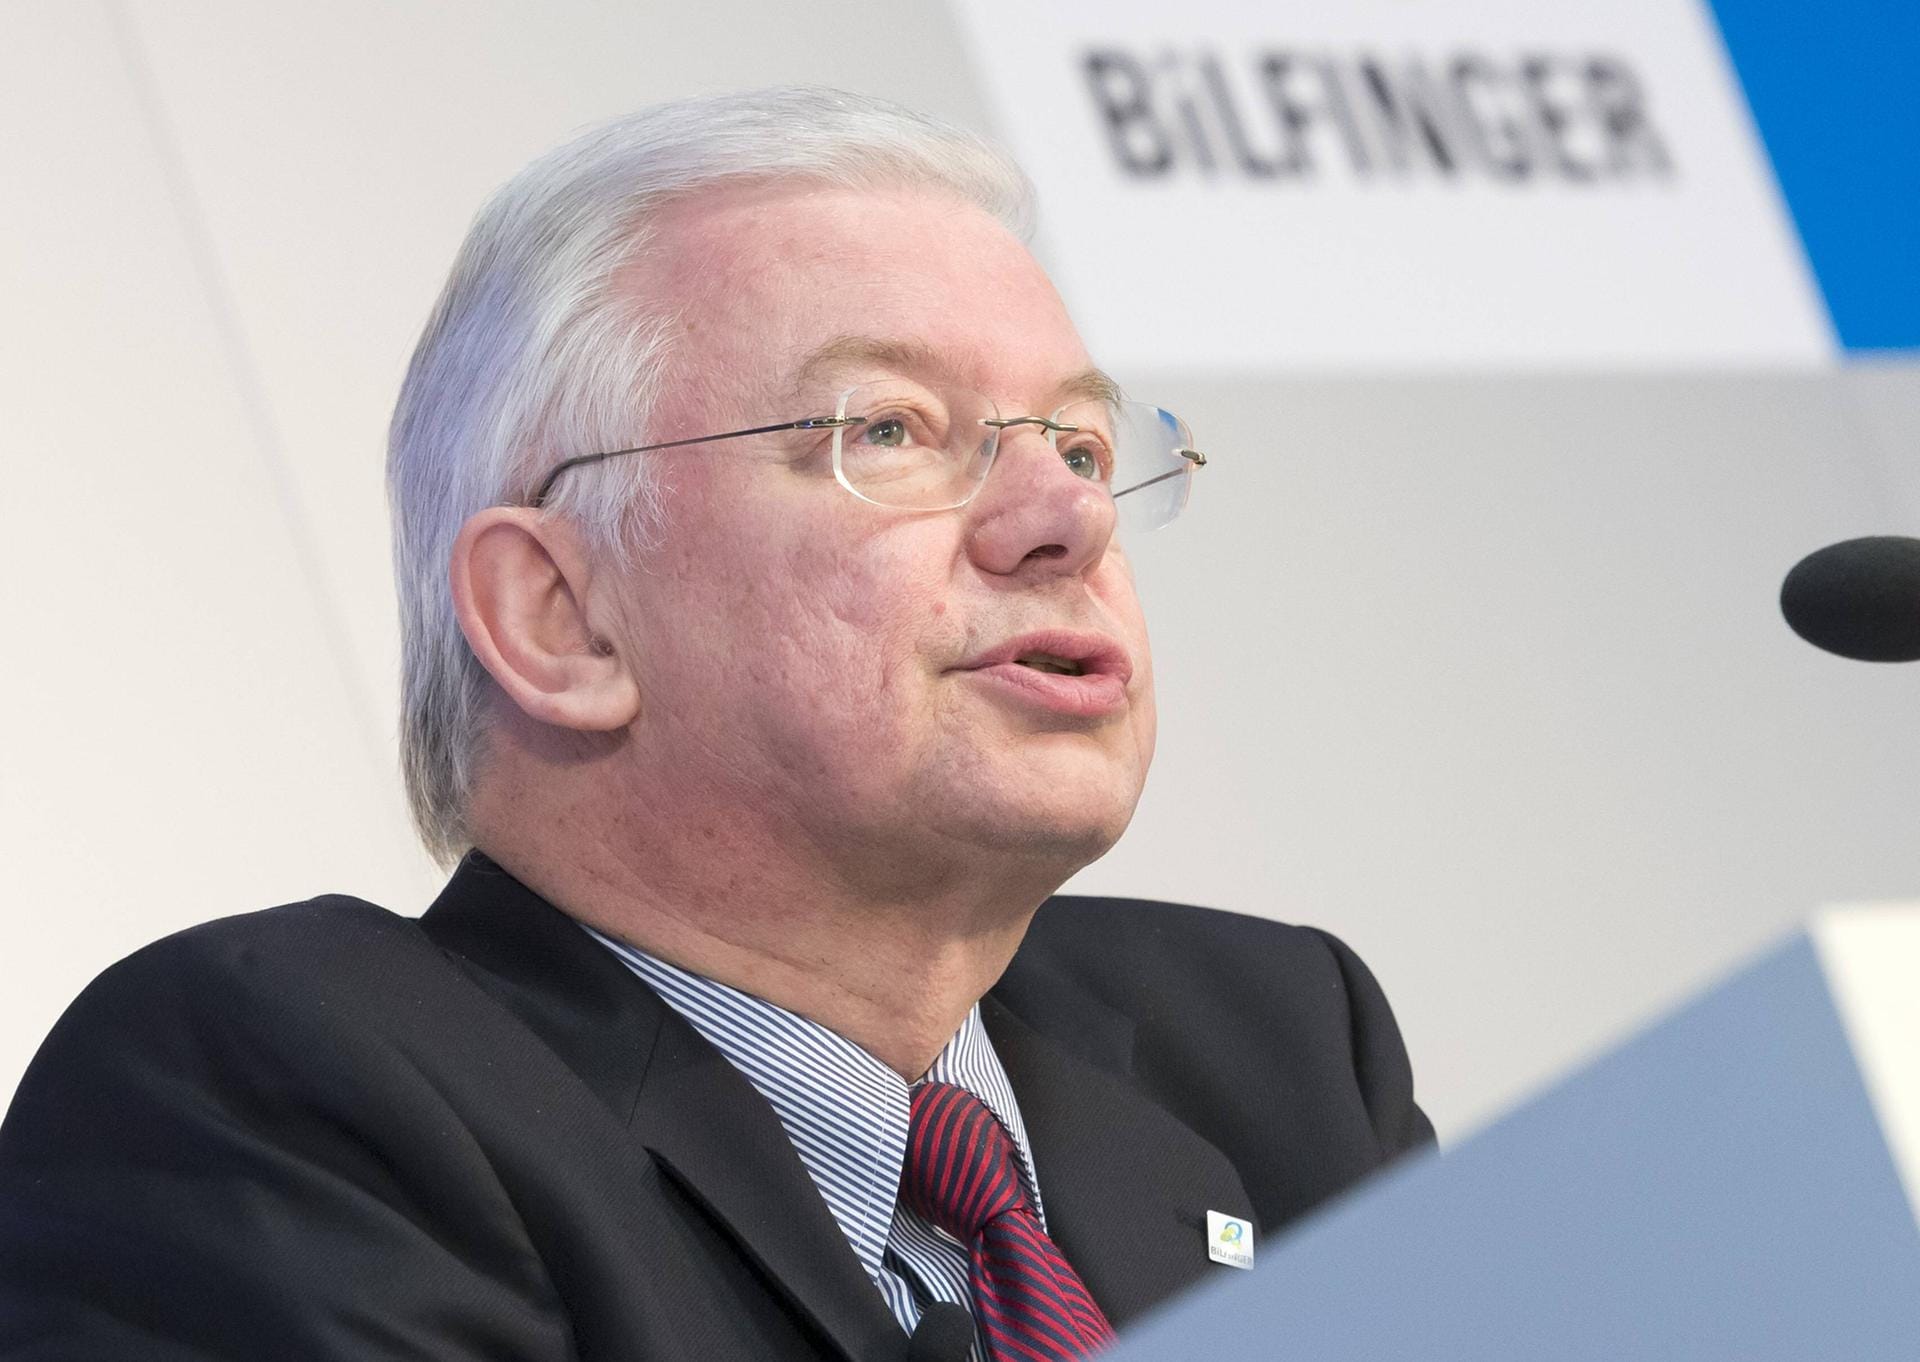 Der ehemalige Ministerpräsident Hessens, Roland Koch, war bis 2014 Vorstandsvorsitzender des deutschen Baukonzerns Bilfinger. Seit März 2015 ist er außerdem Mitglied des Aufsichtsrats von Vodafone.